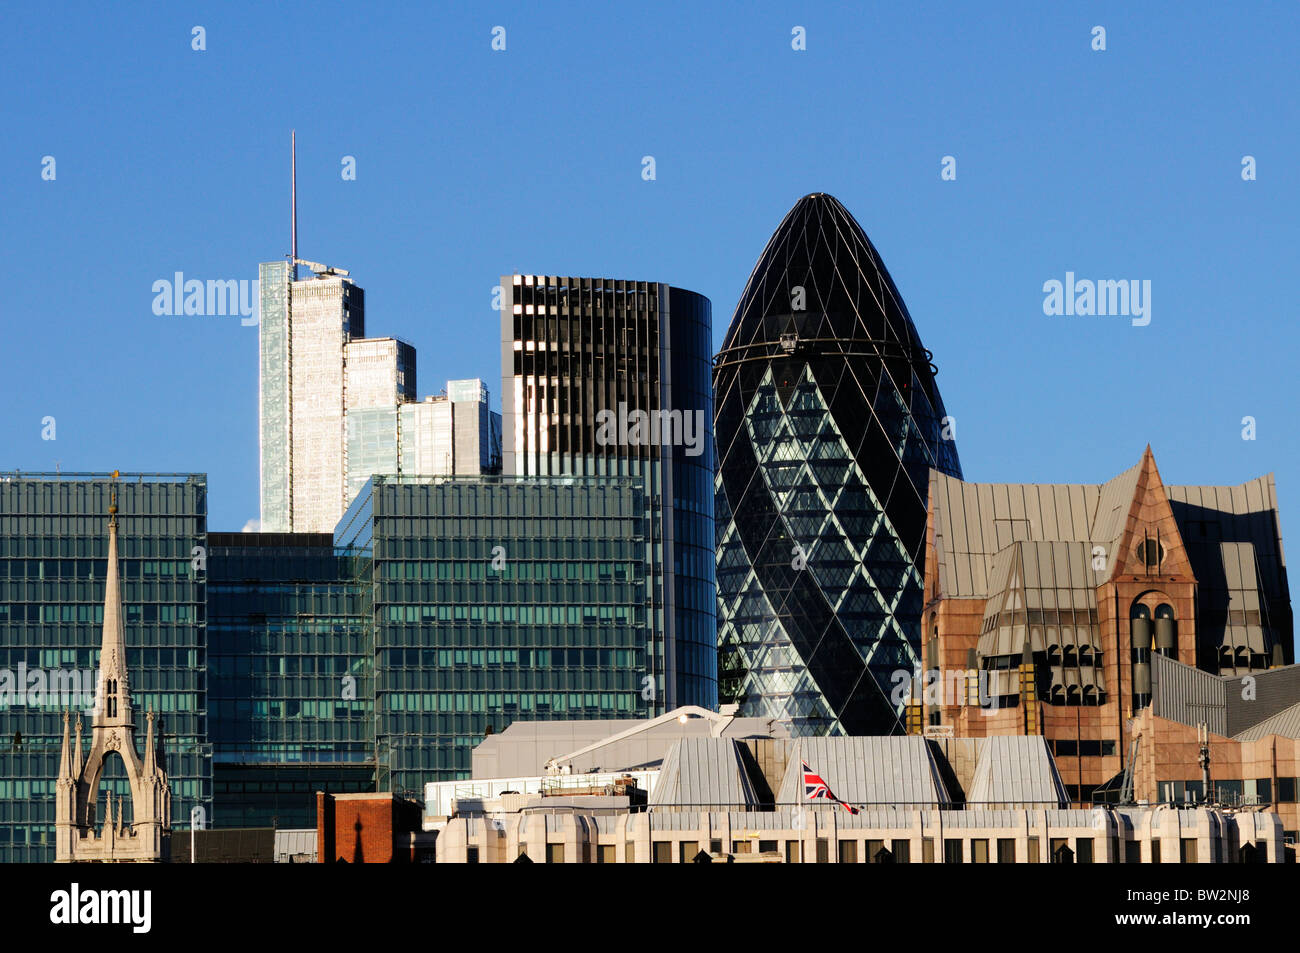 Résumé détail architectural de bâtiments Ville de London, London, England, UK Banque D'Images